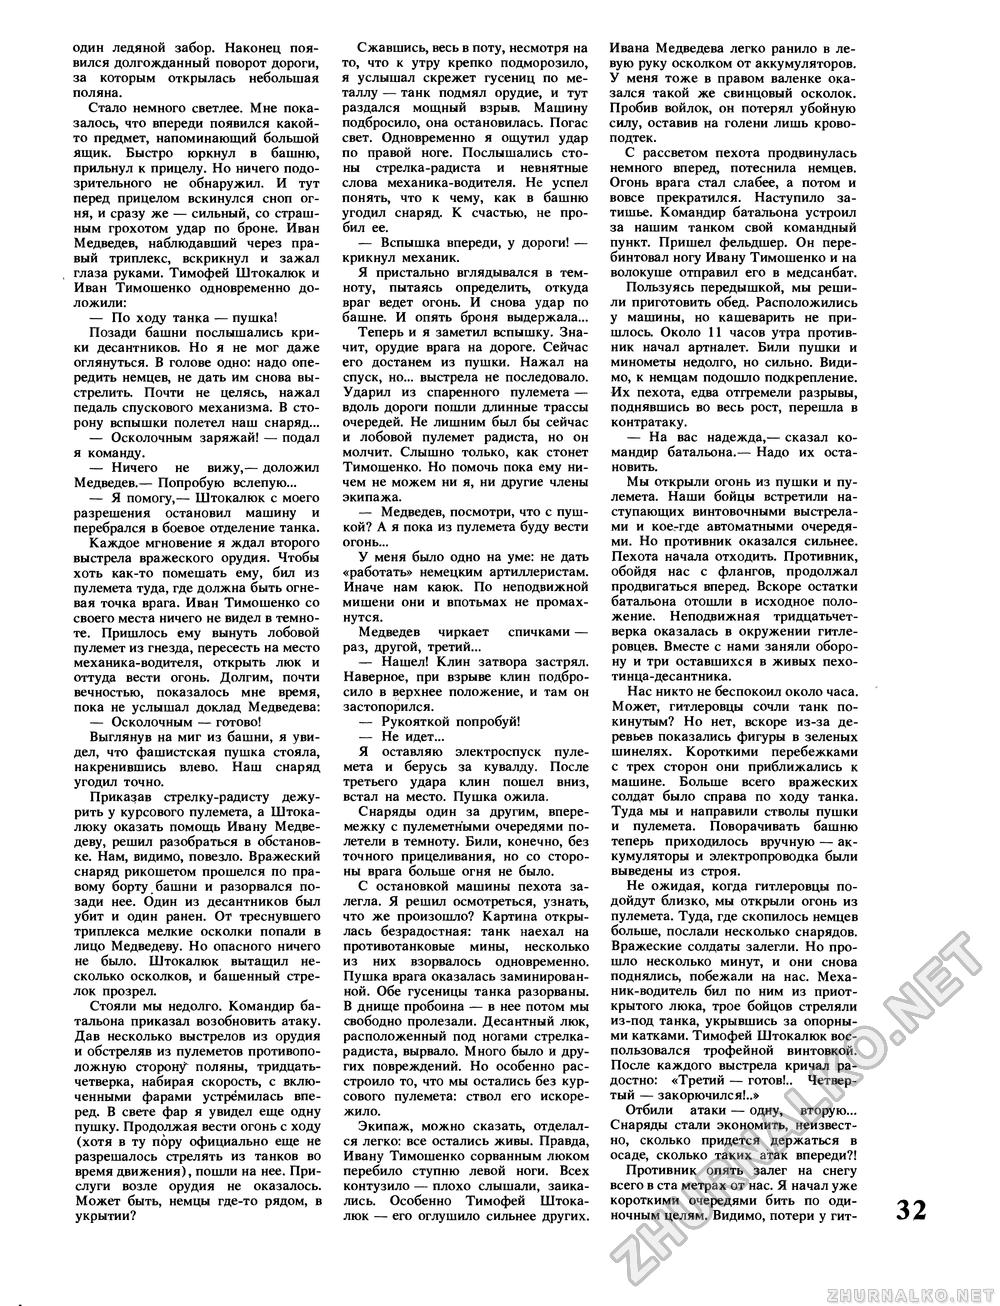 Вокруг света 1987-02, страница 34